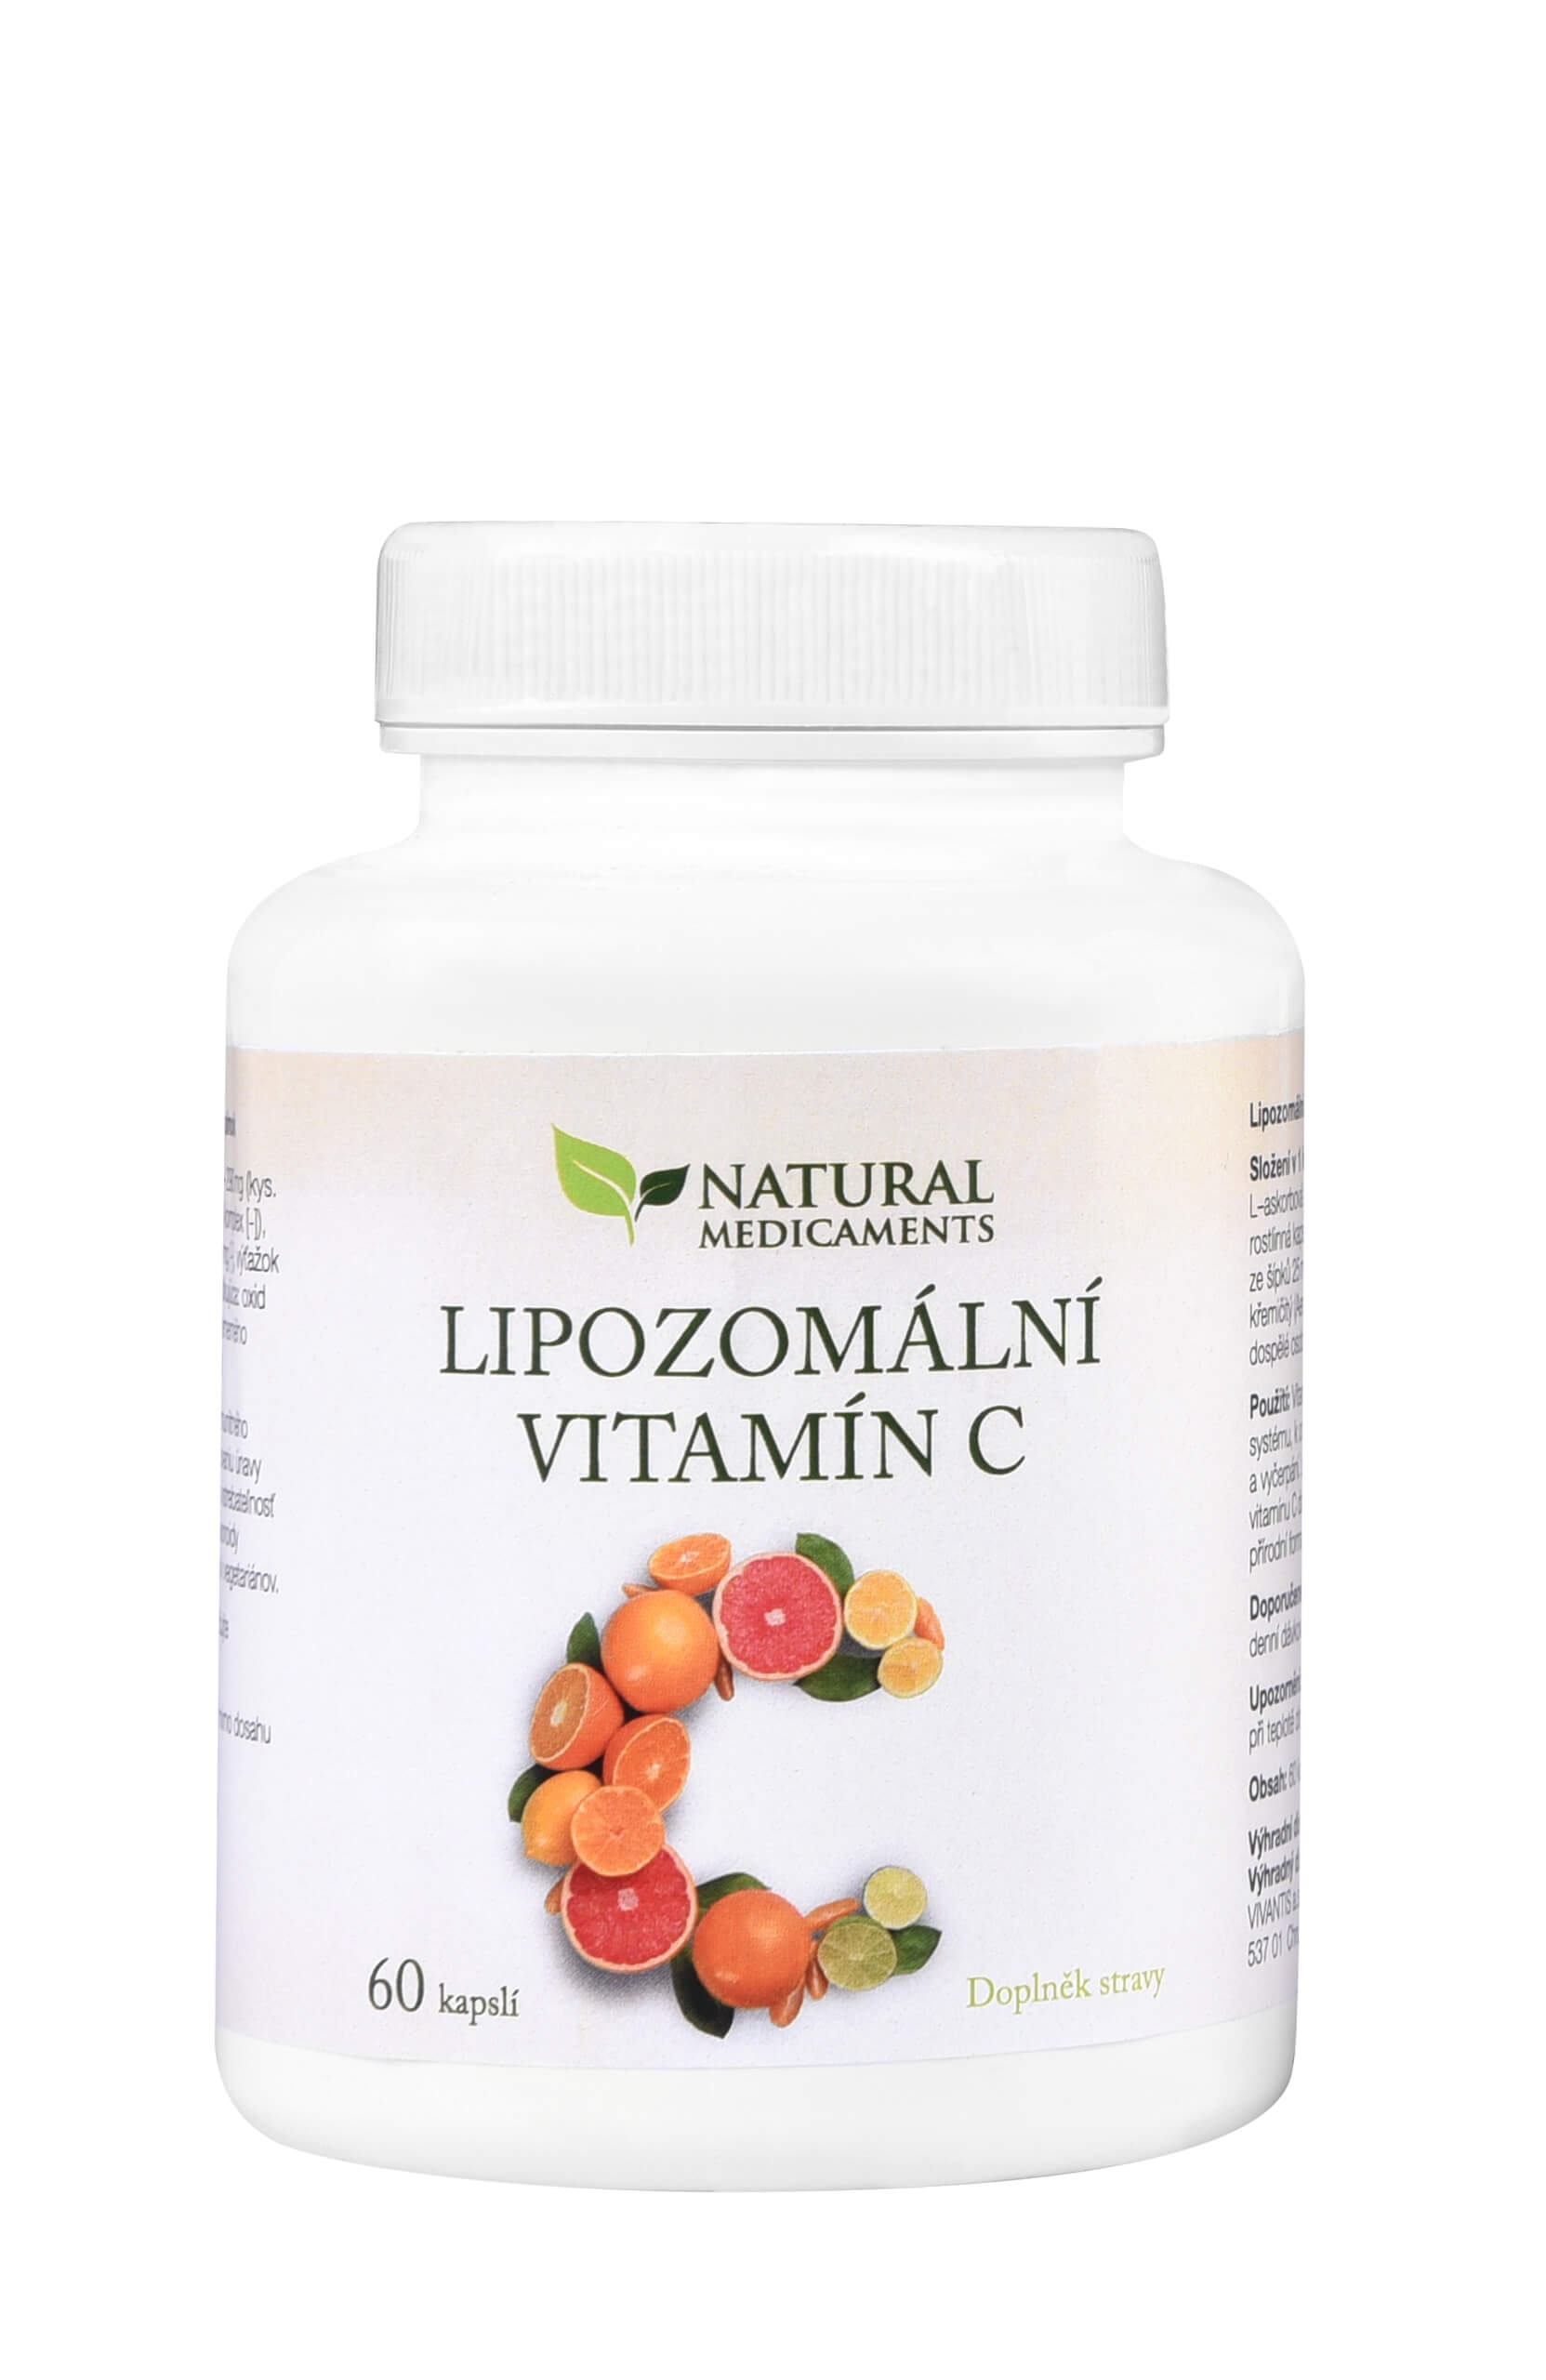 Zobrazit detail výrobku Natural Medicaments Lipozomální vitamín C 60 kapslí + 2 měsíce na vrácení zboží